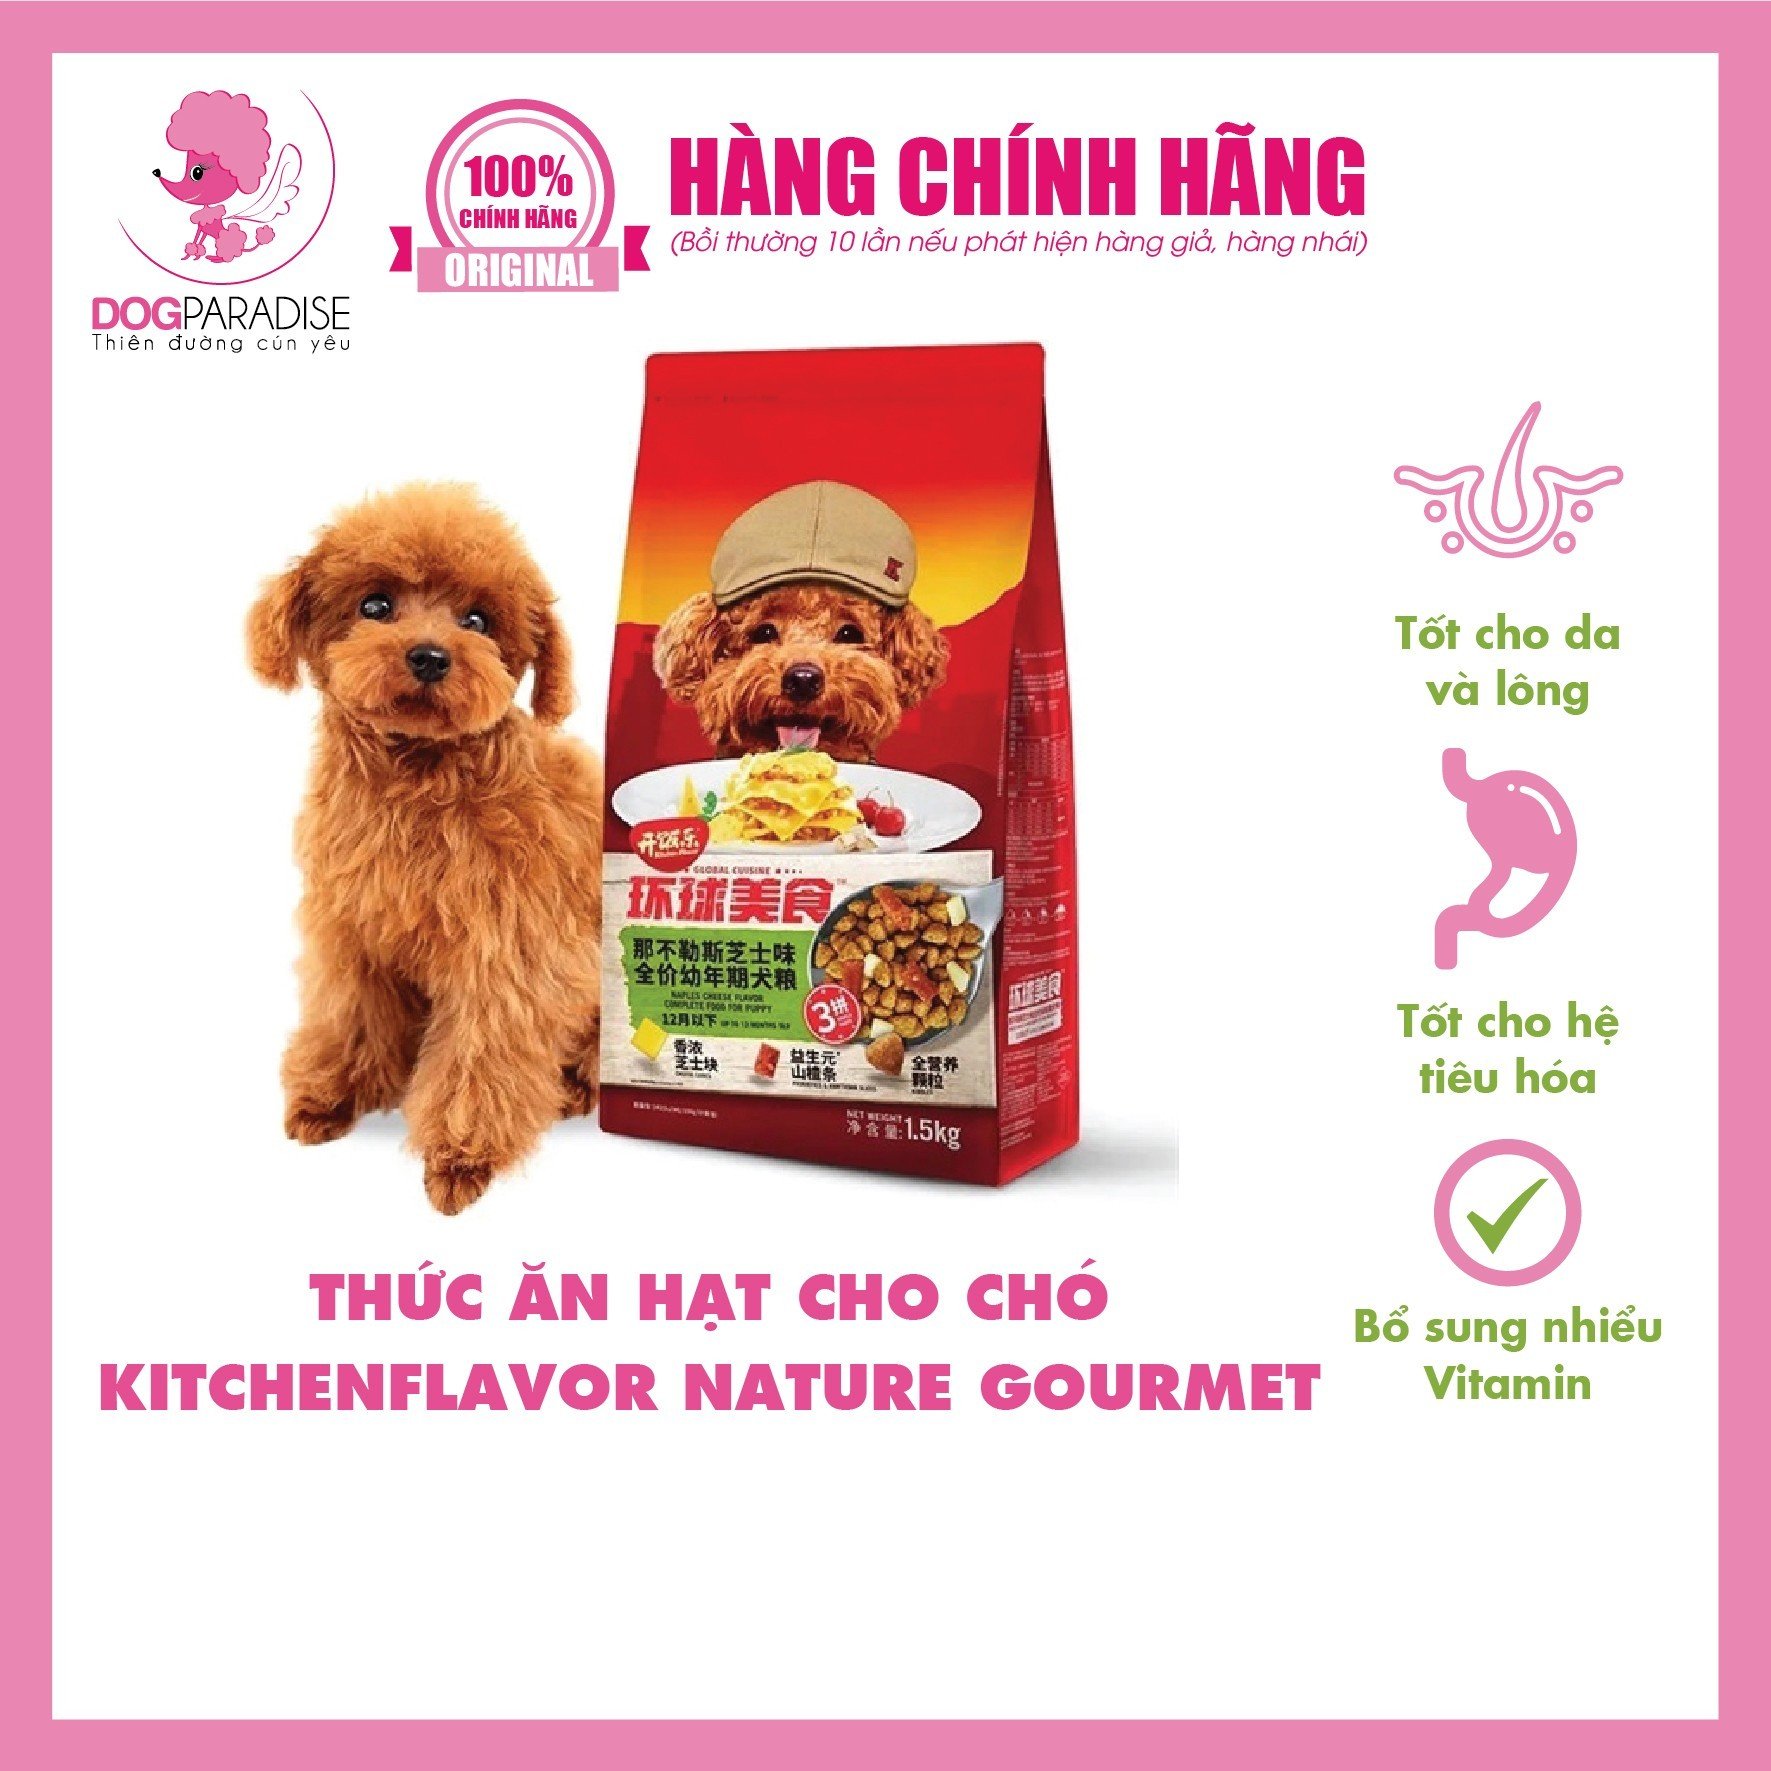 Thức ăn hạt cho chó KitchenFlavor Nature Gourmet 1.5kg